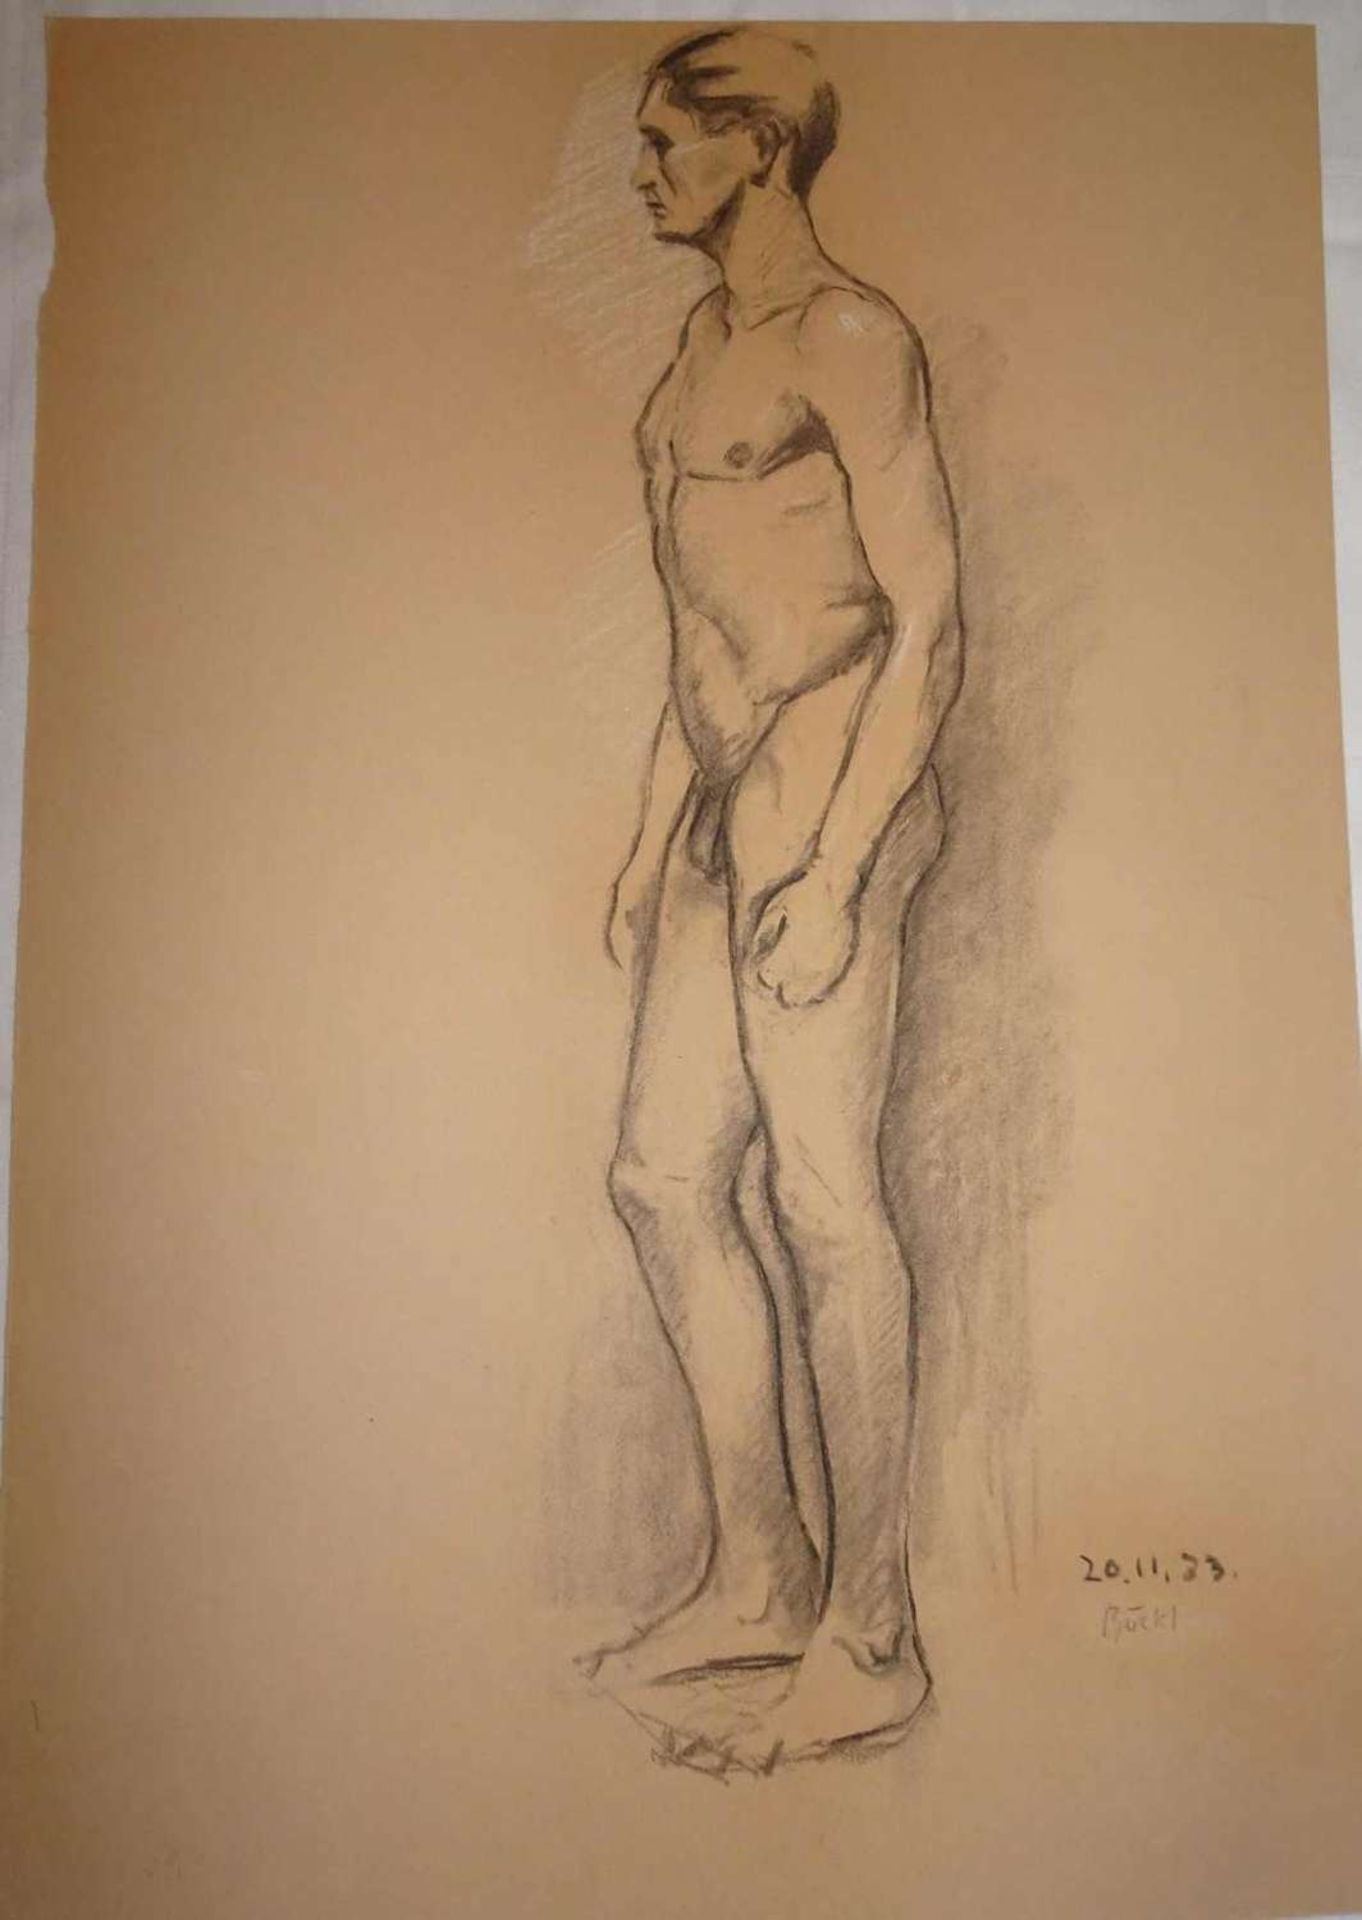 Herbert Böckl (1894-1966), "Männerakt", rechts Signatur 20.11.33 Böckl. Maße: Höhe ca. 50 cm, Länge